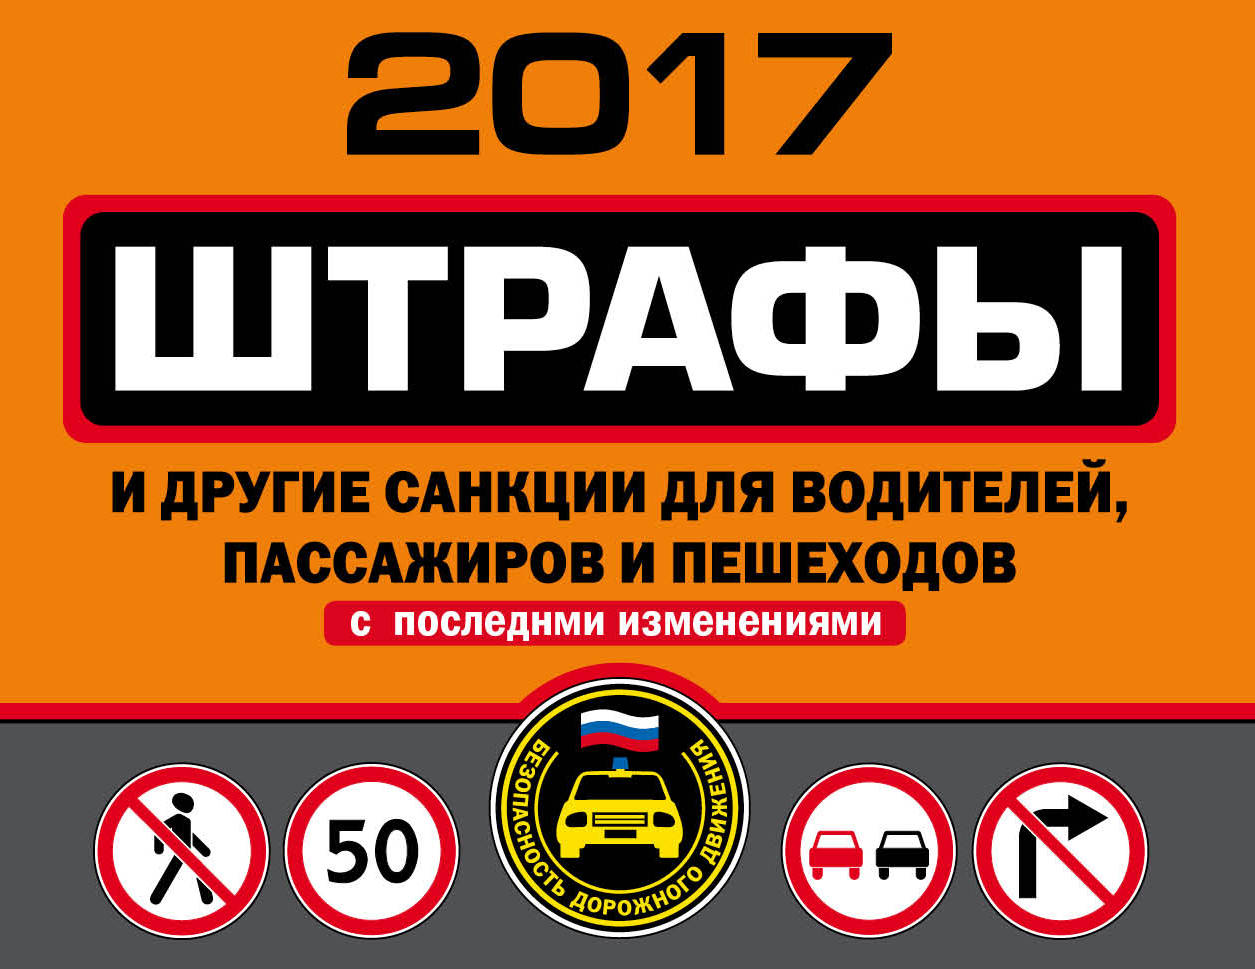 Штрафы и другие санкции для водителей, пассажиров и пешеходов с последними изменениями на 2017 год